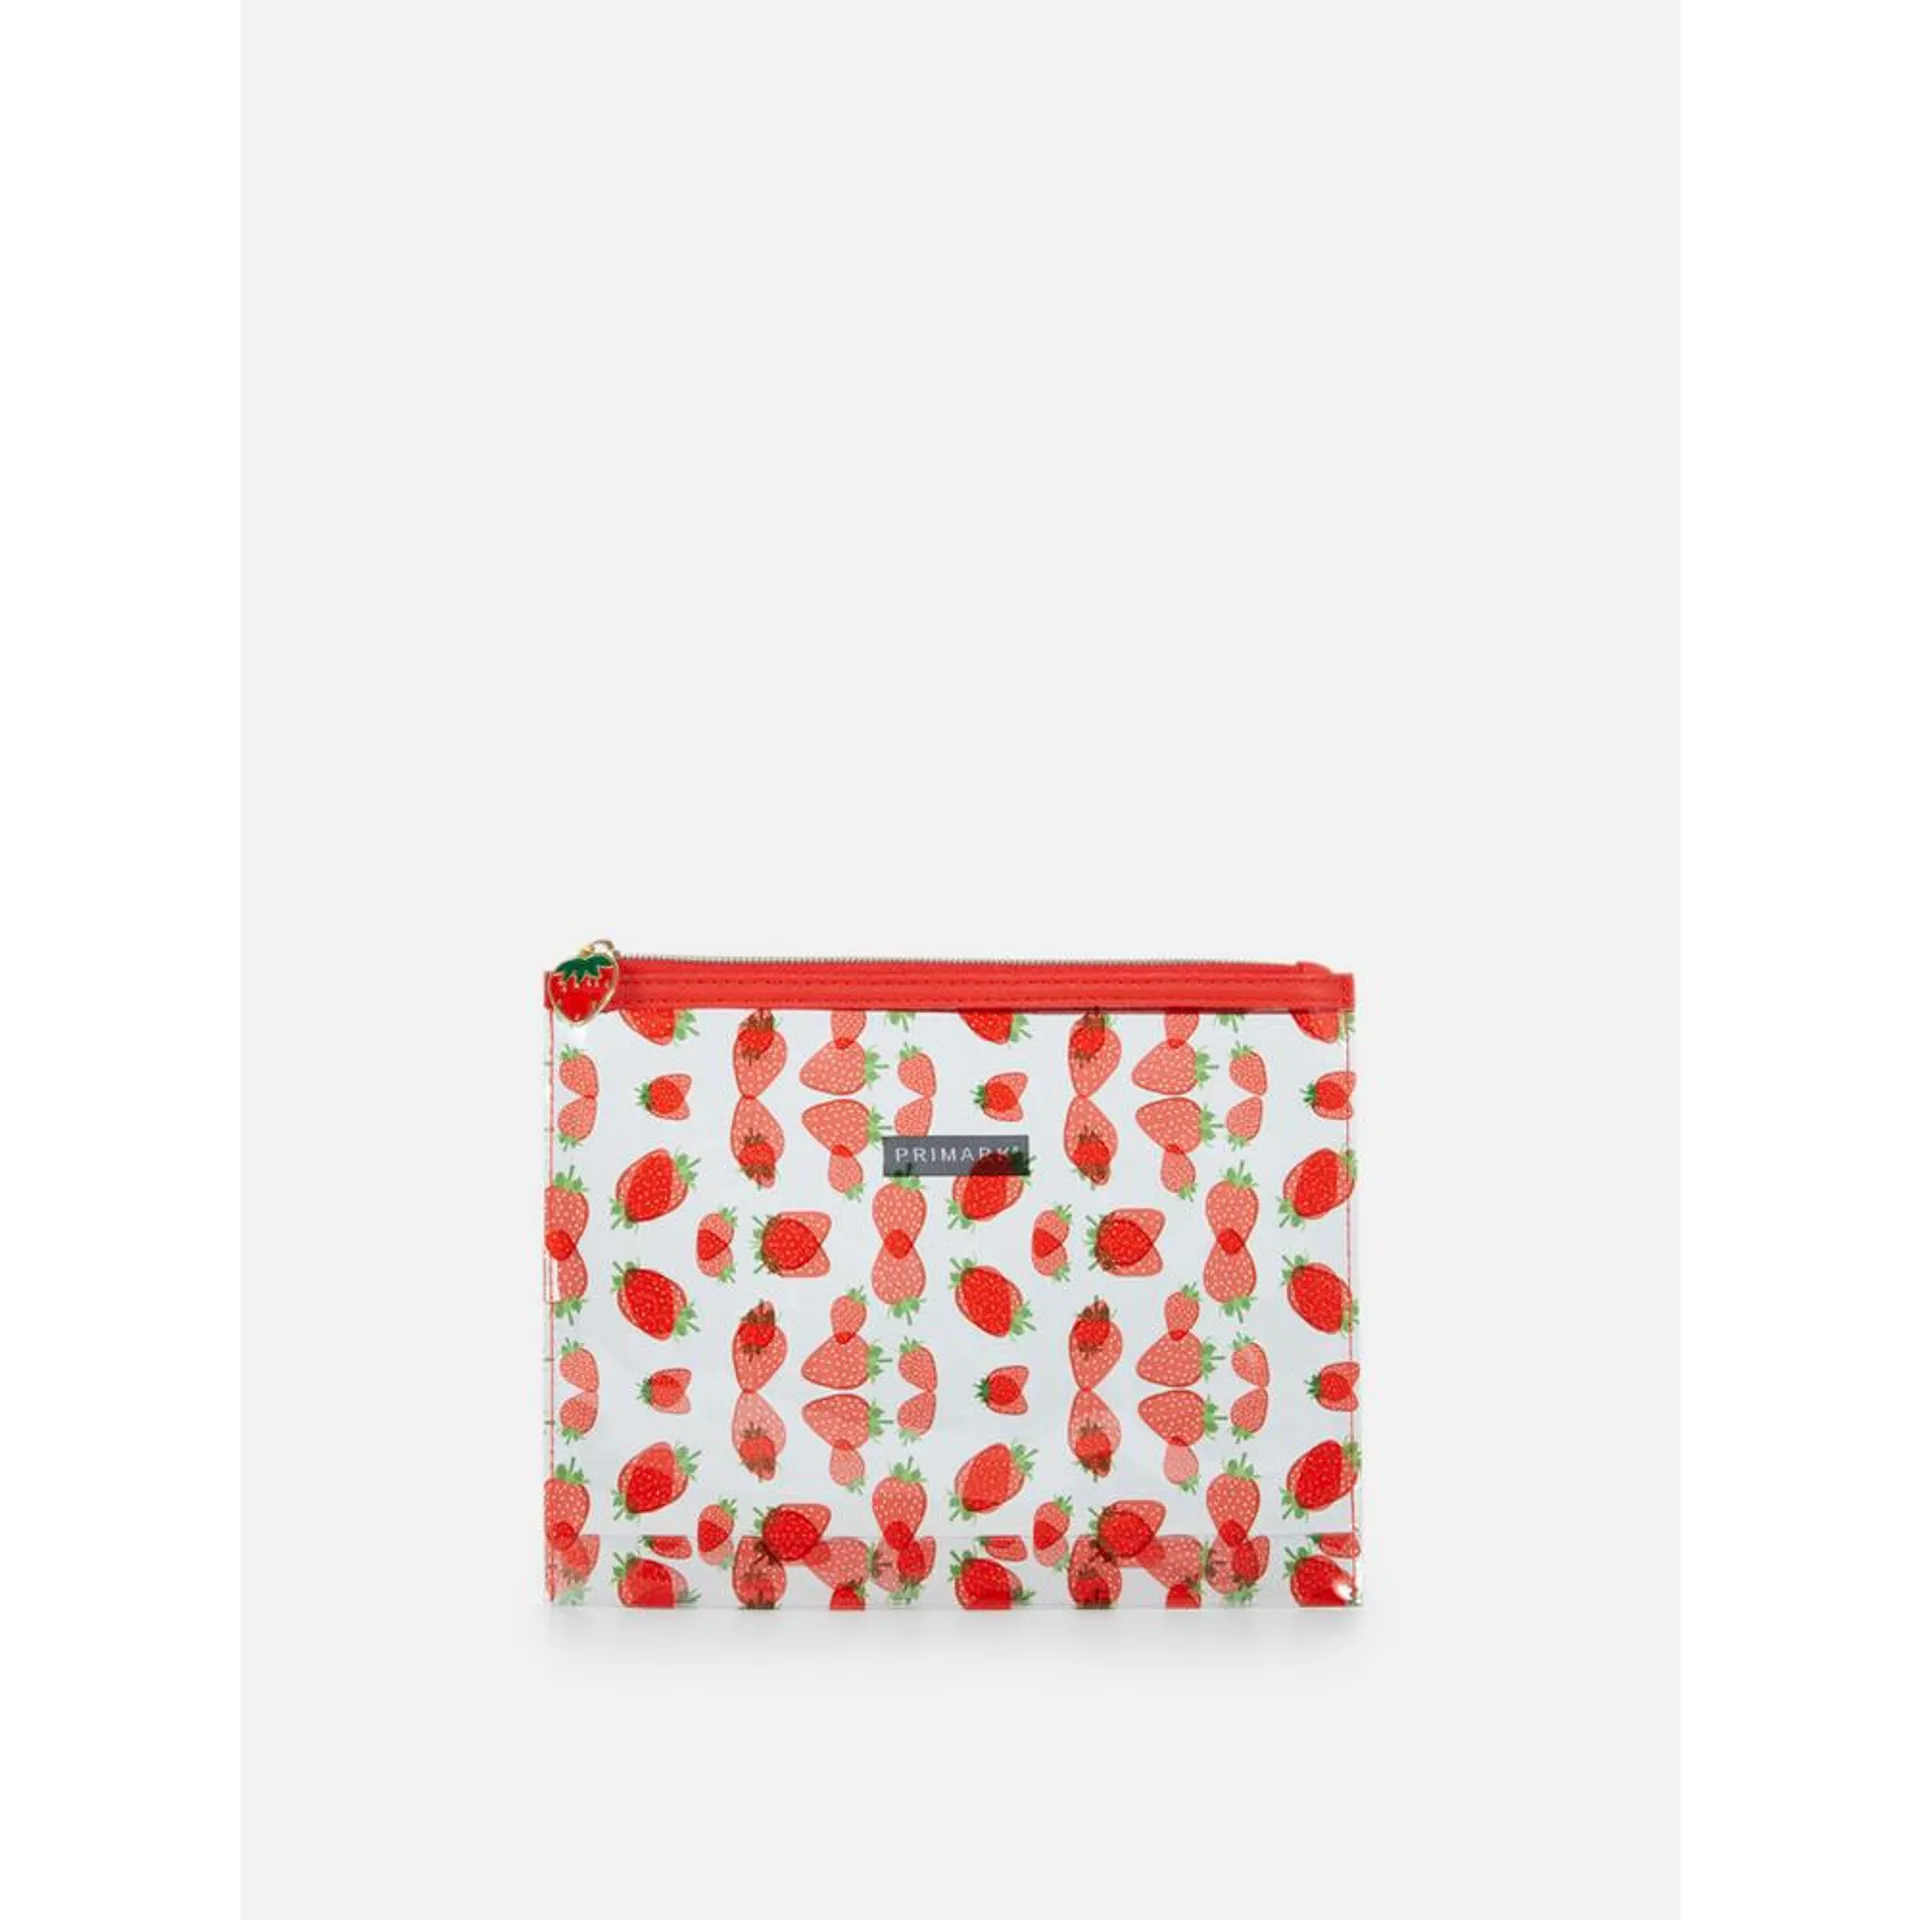 Durchsichtige Tasche mit Erdbeer-Print